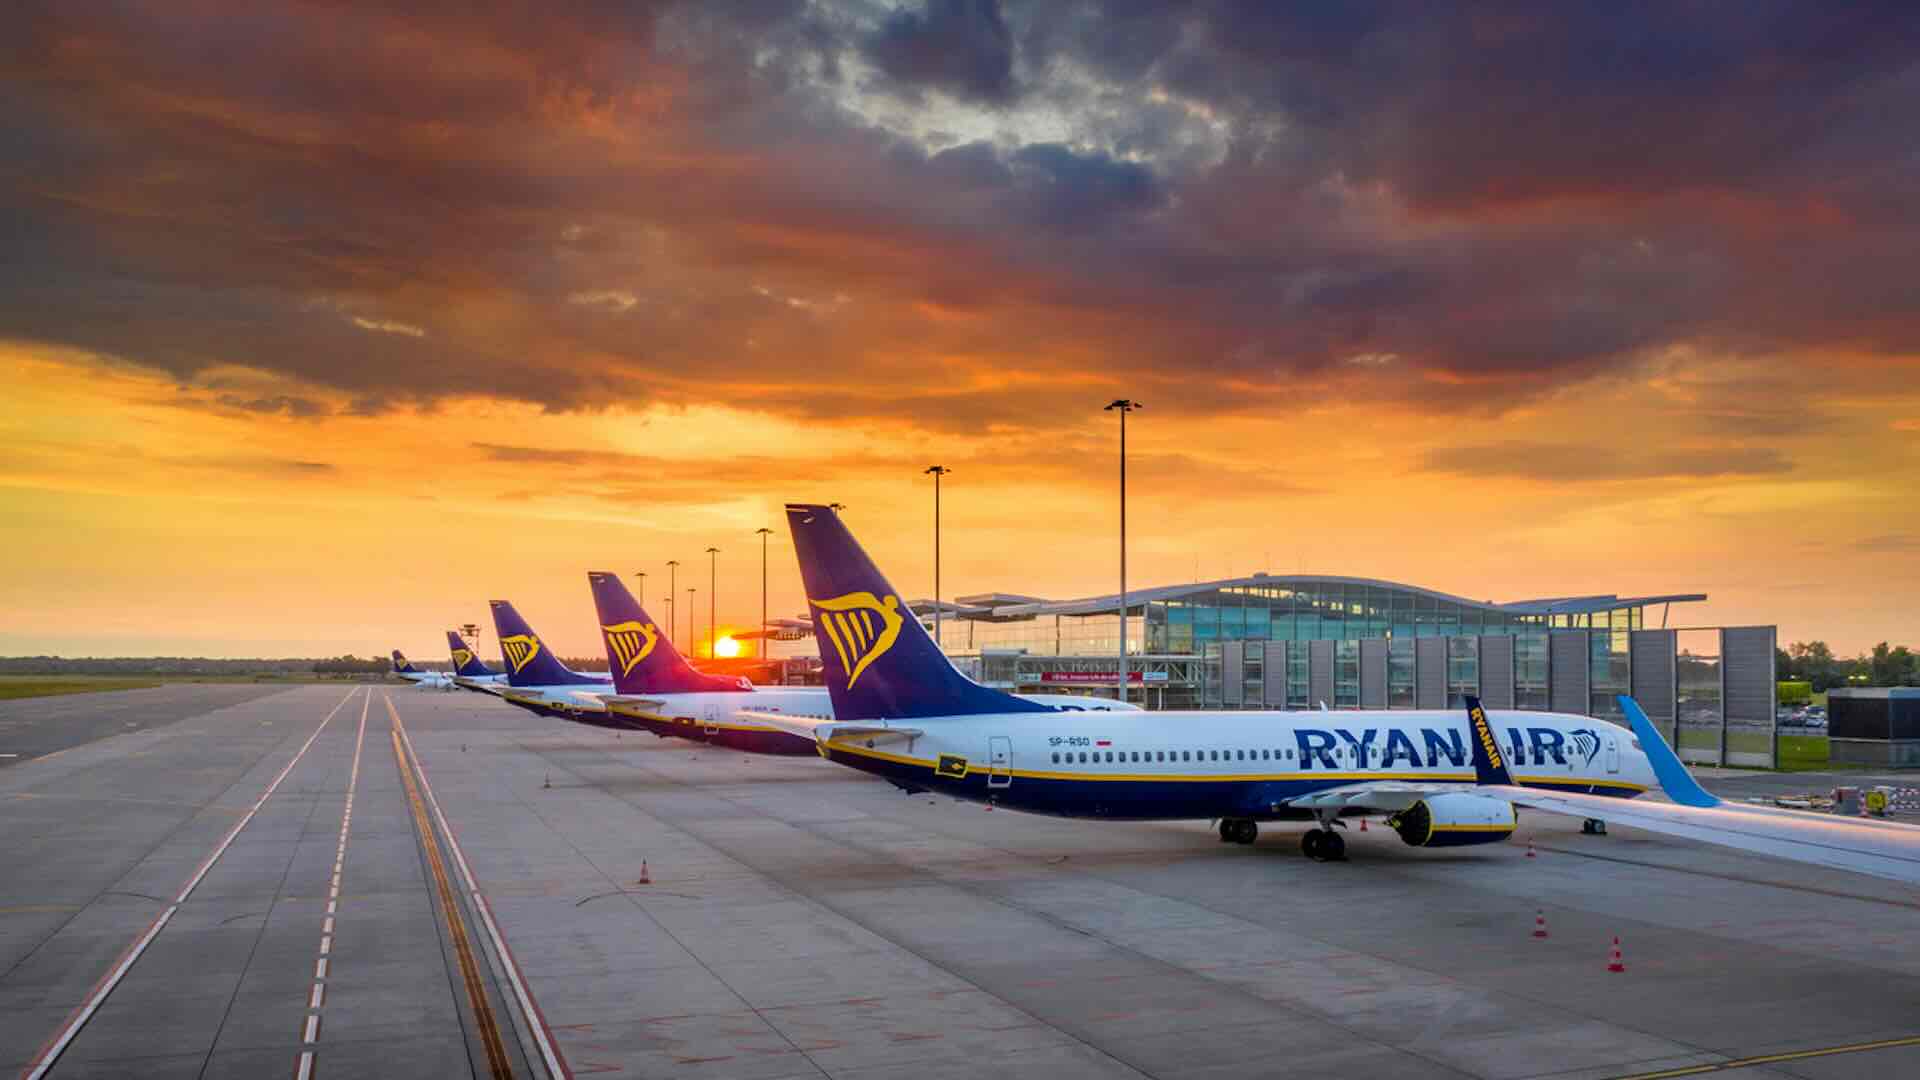 Offerte voli Ryanair: voli a partire da 12,99 euro promo flash